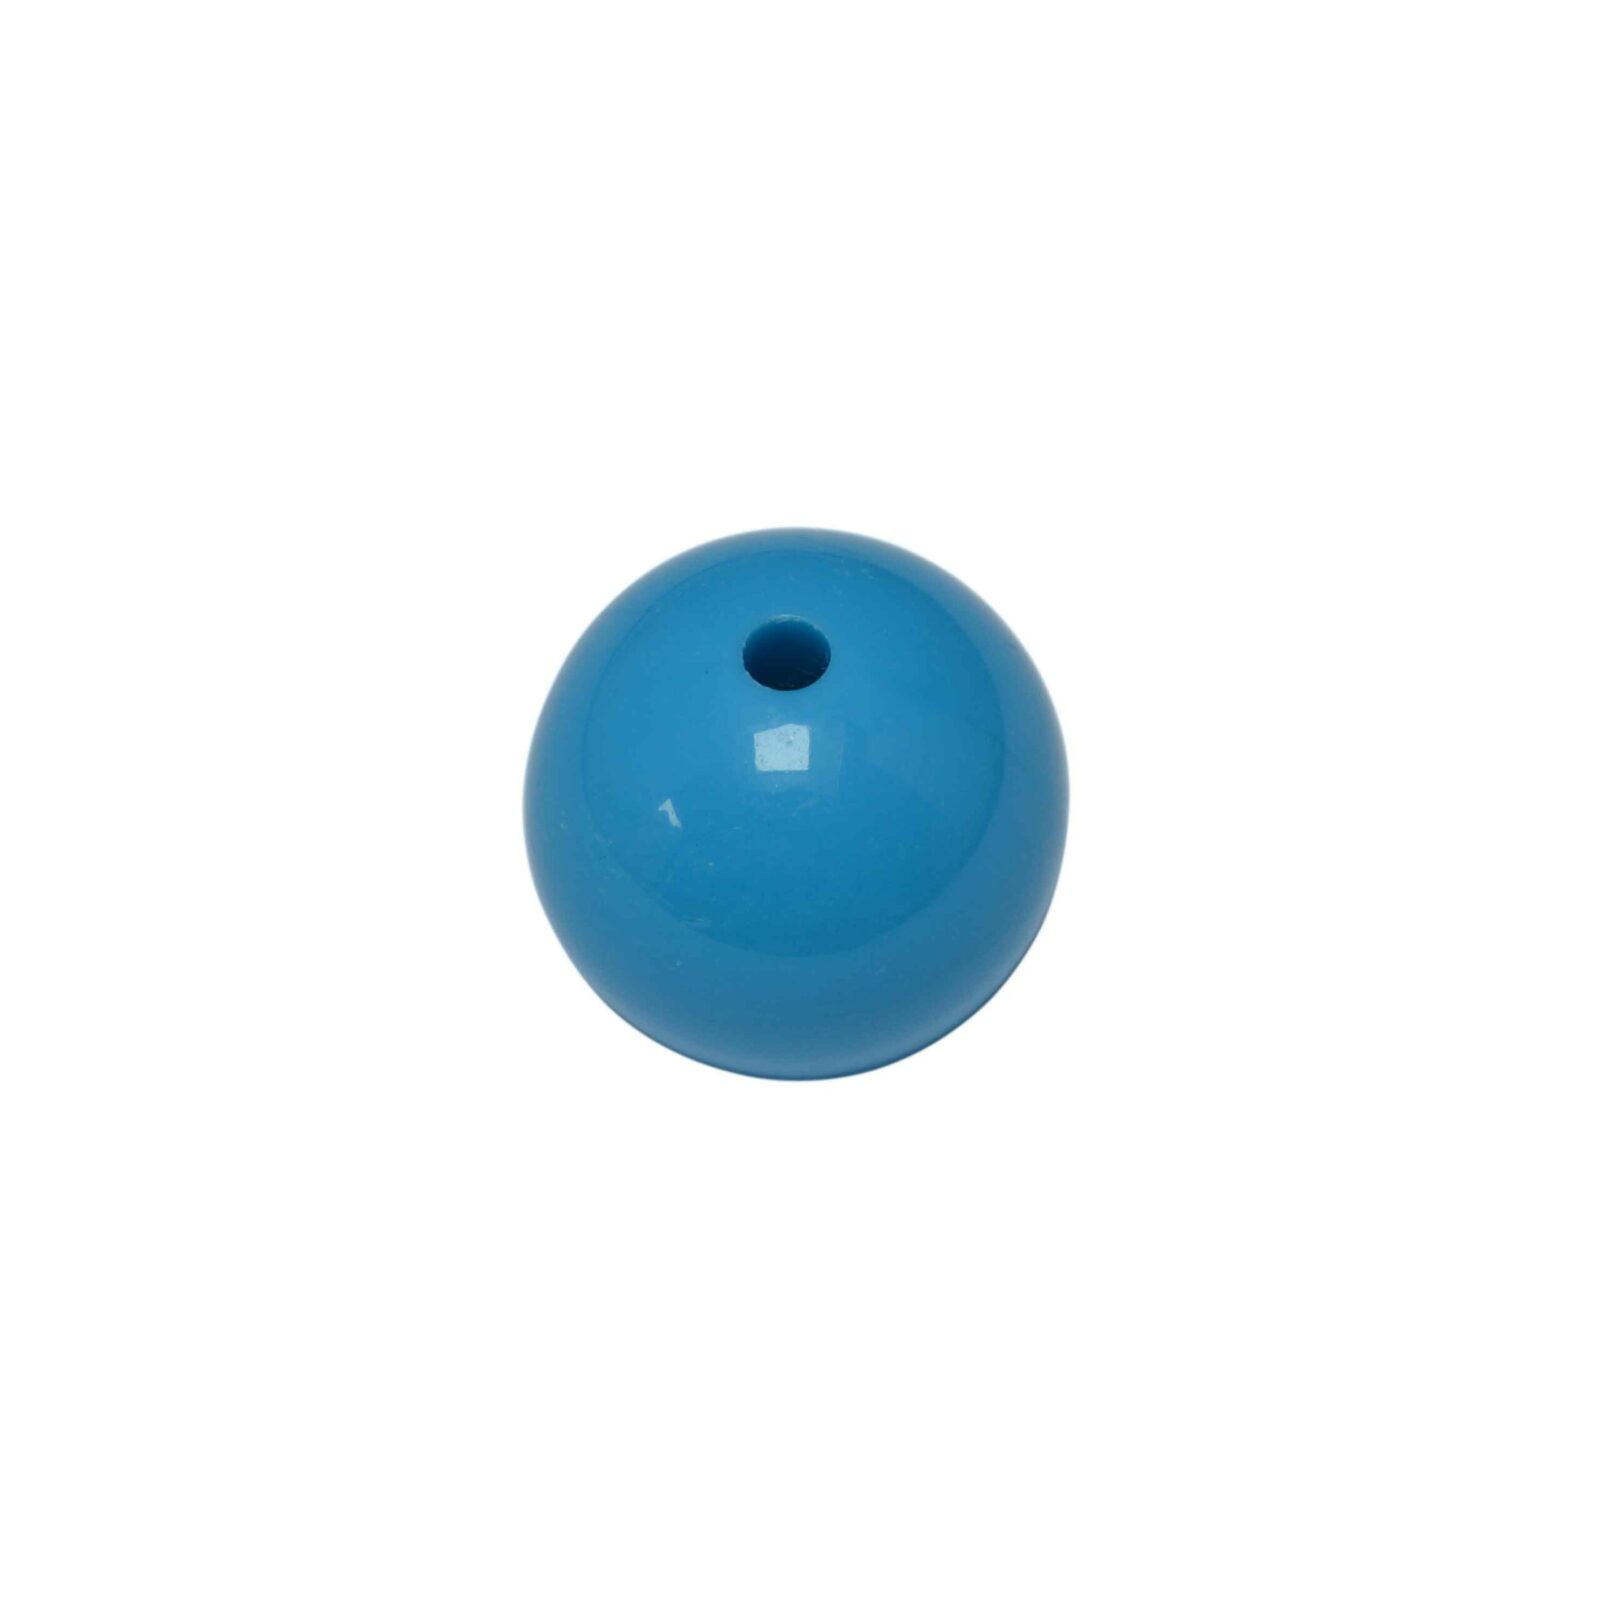 Blauwe ronde acryl kraal